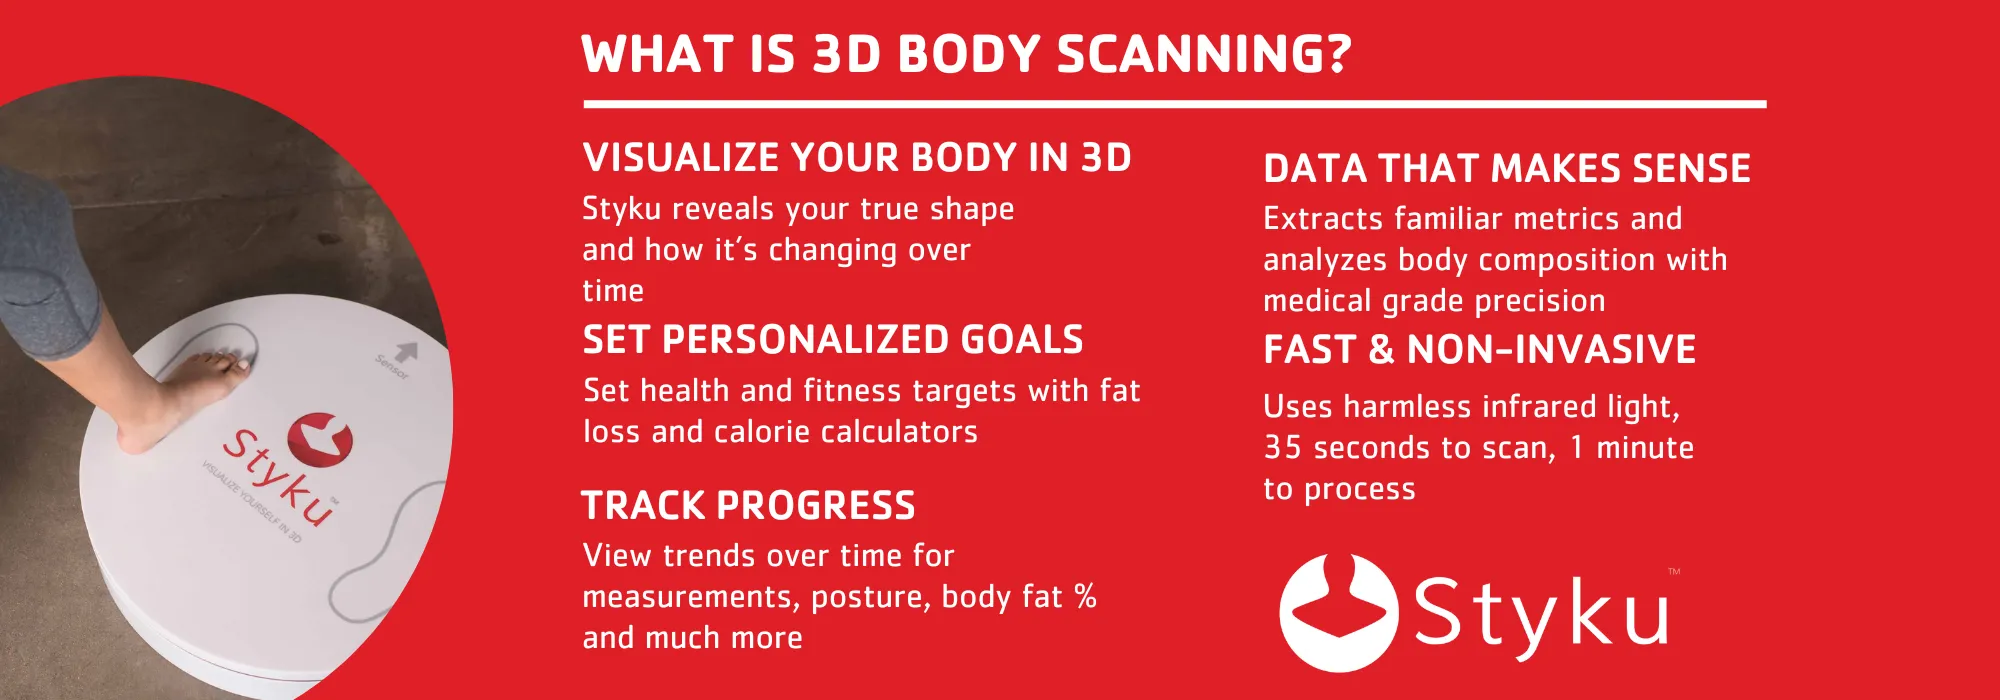 Styku 3D Body Scanner